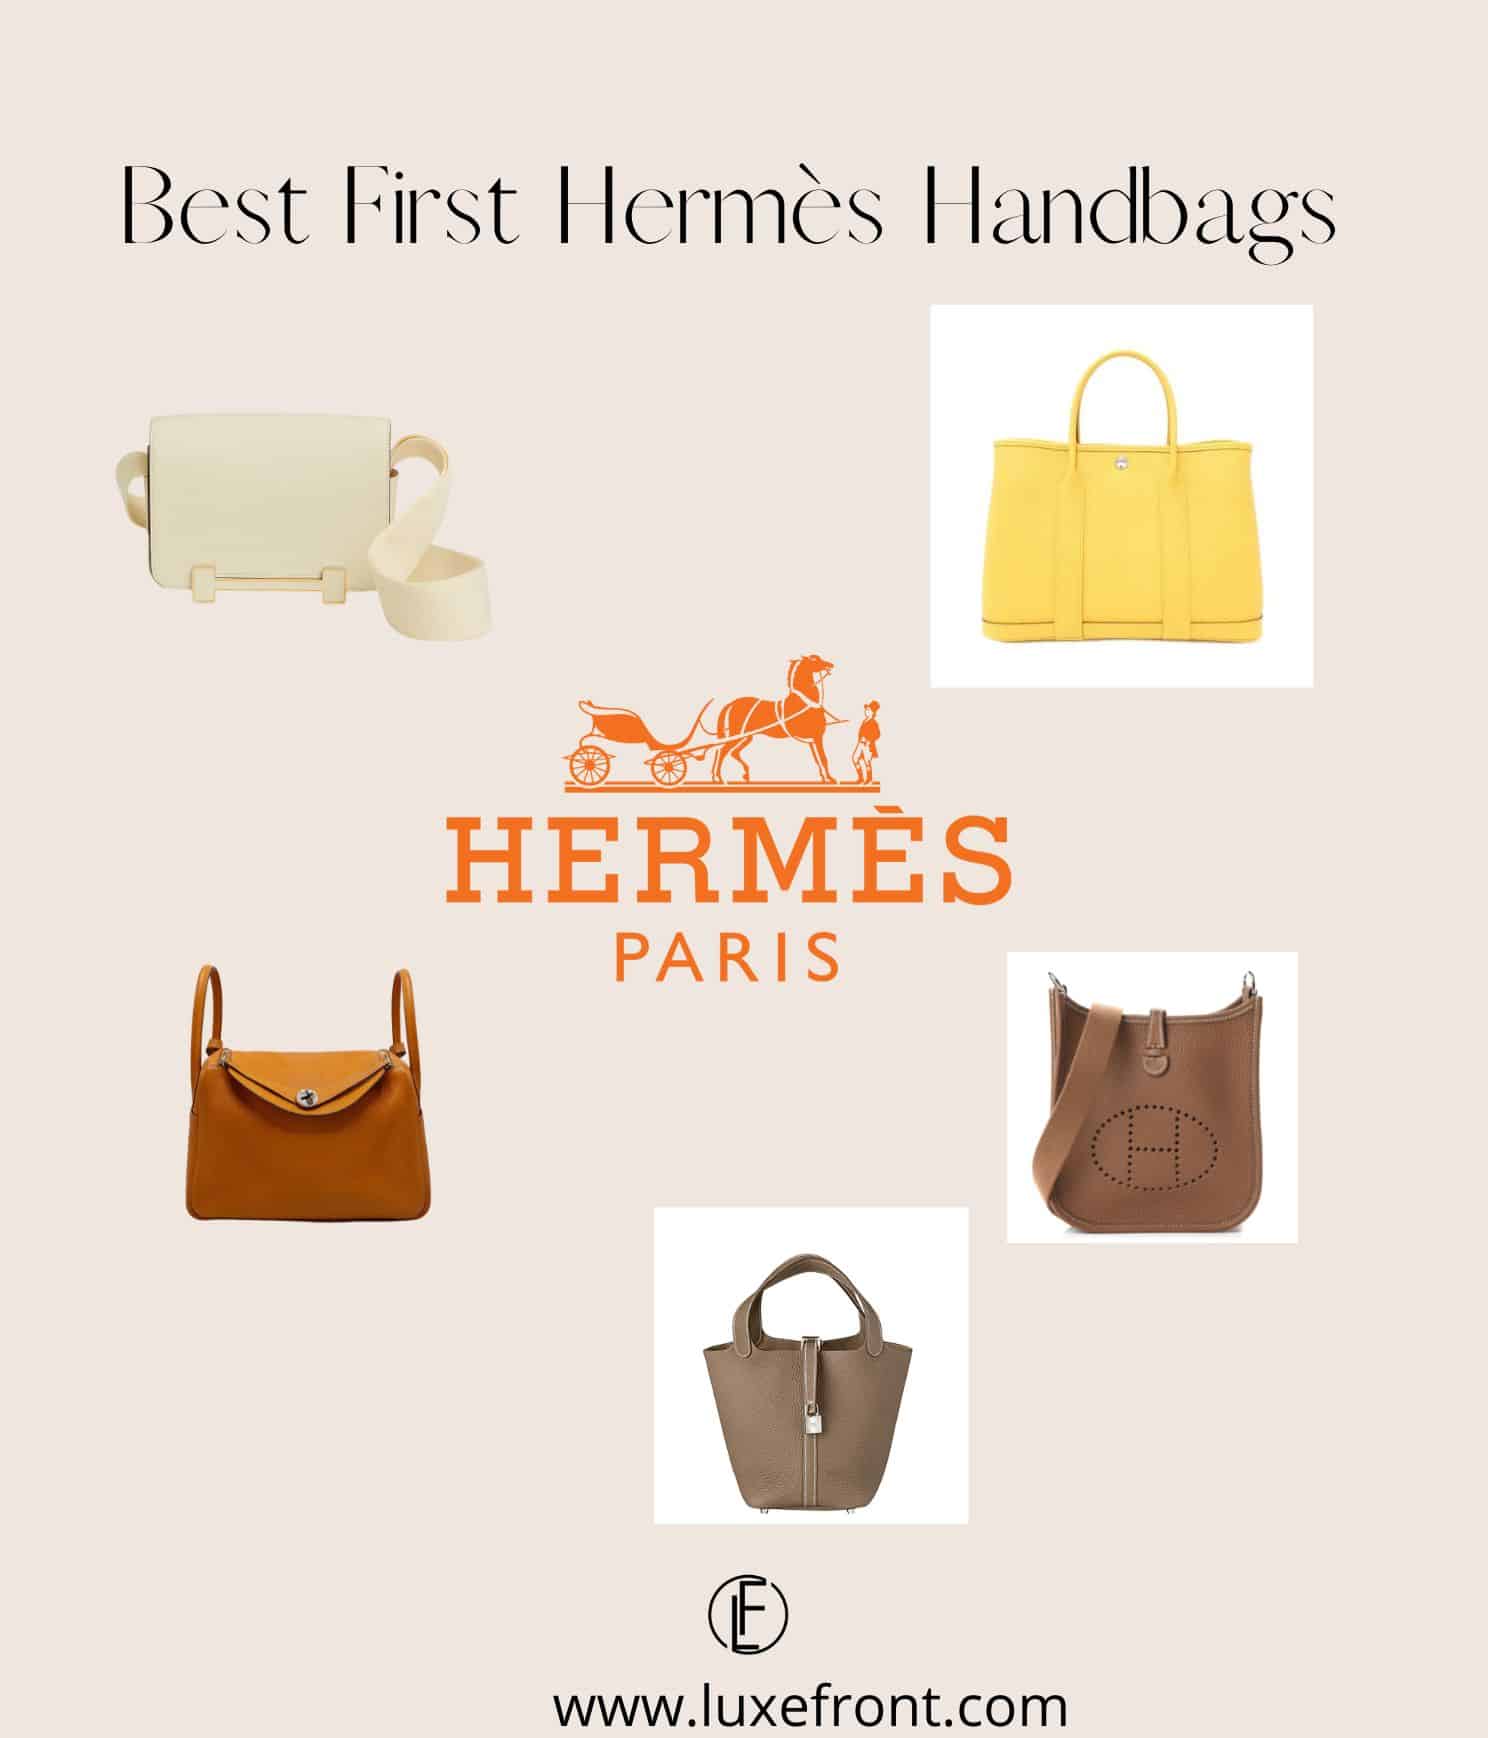 cheapest hermes bags